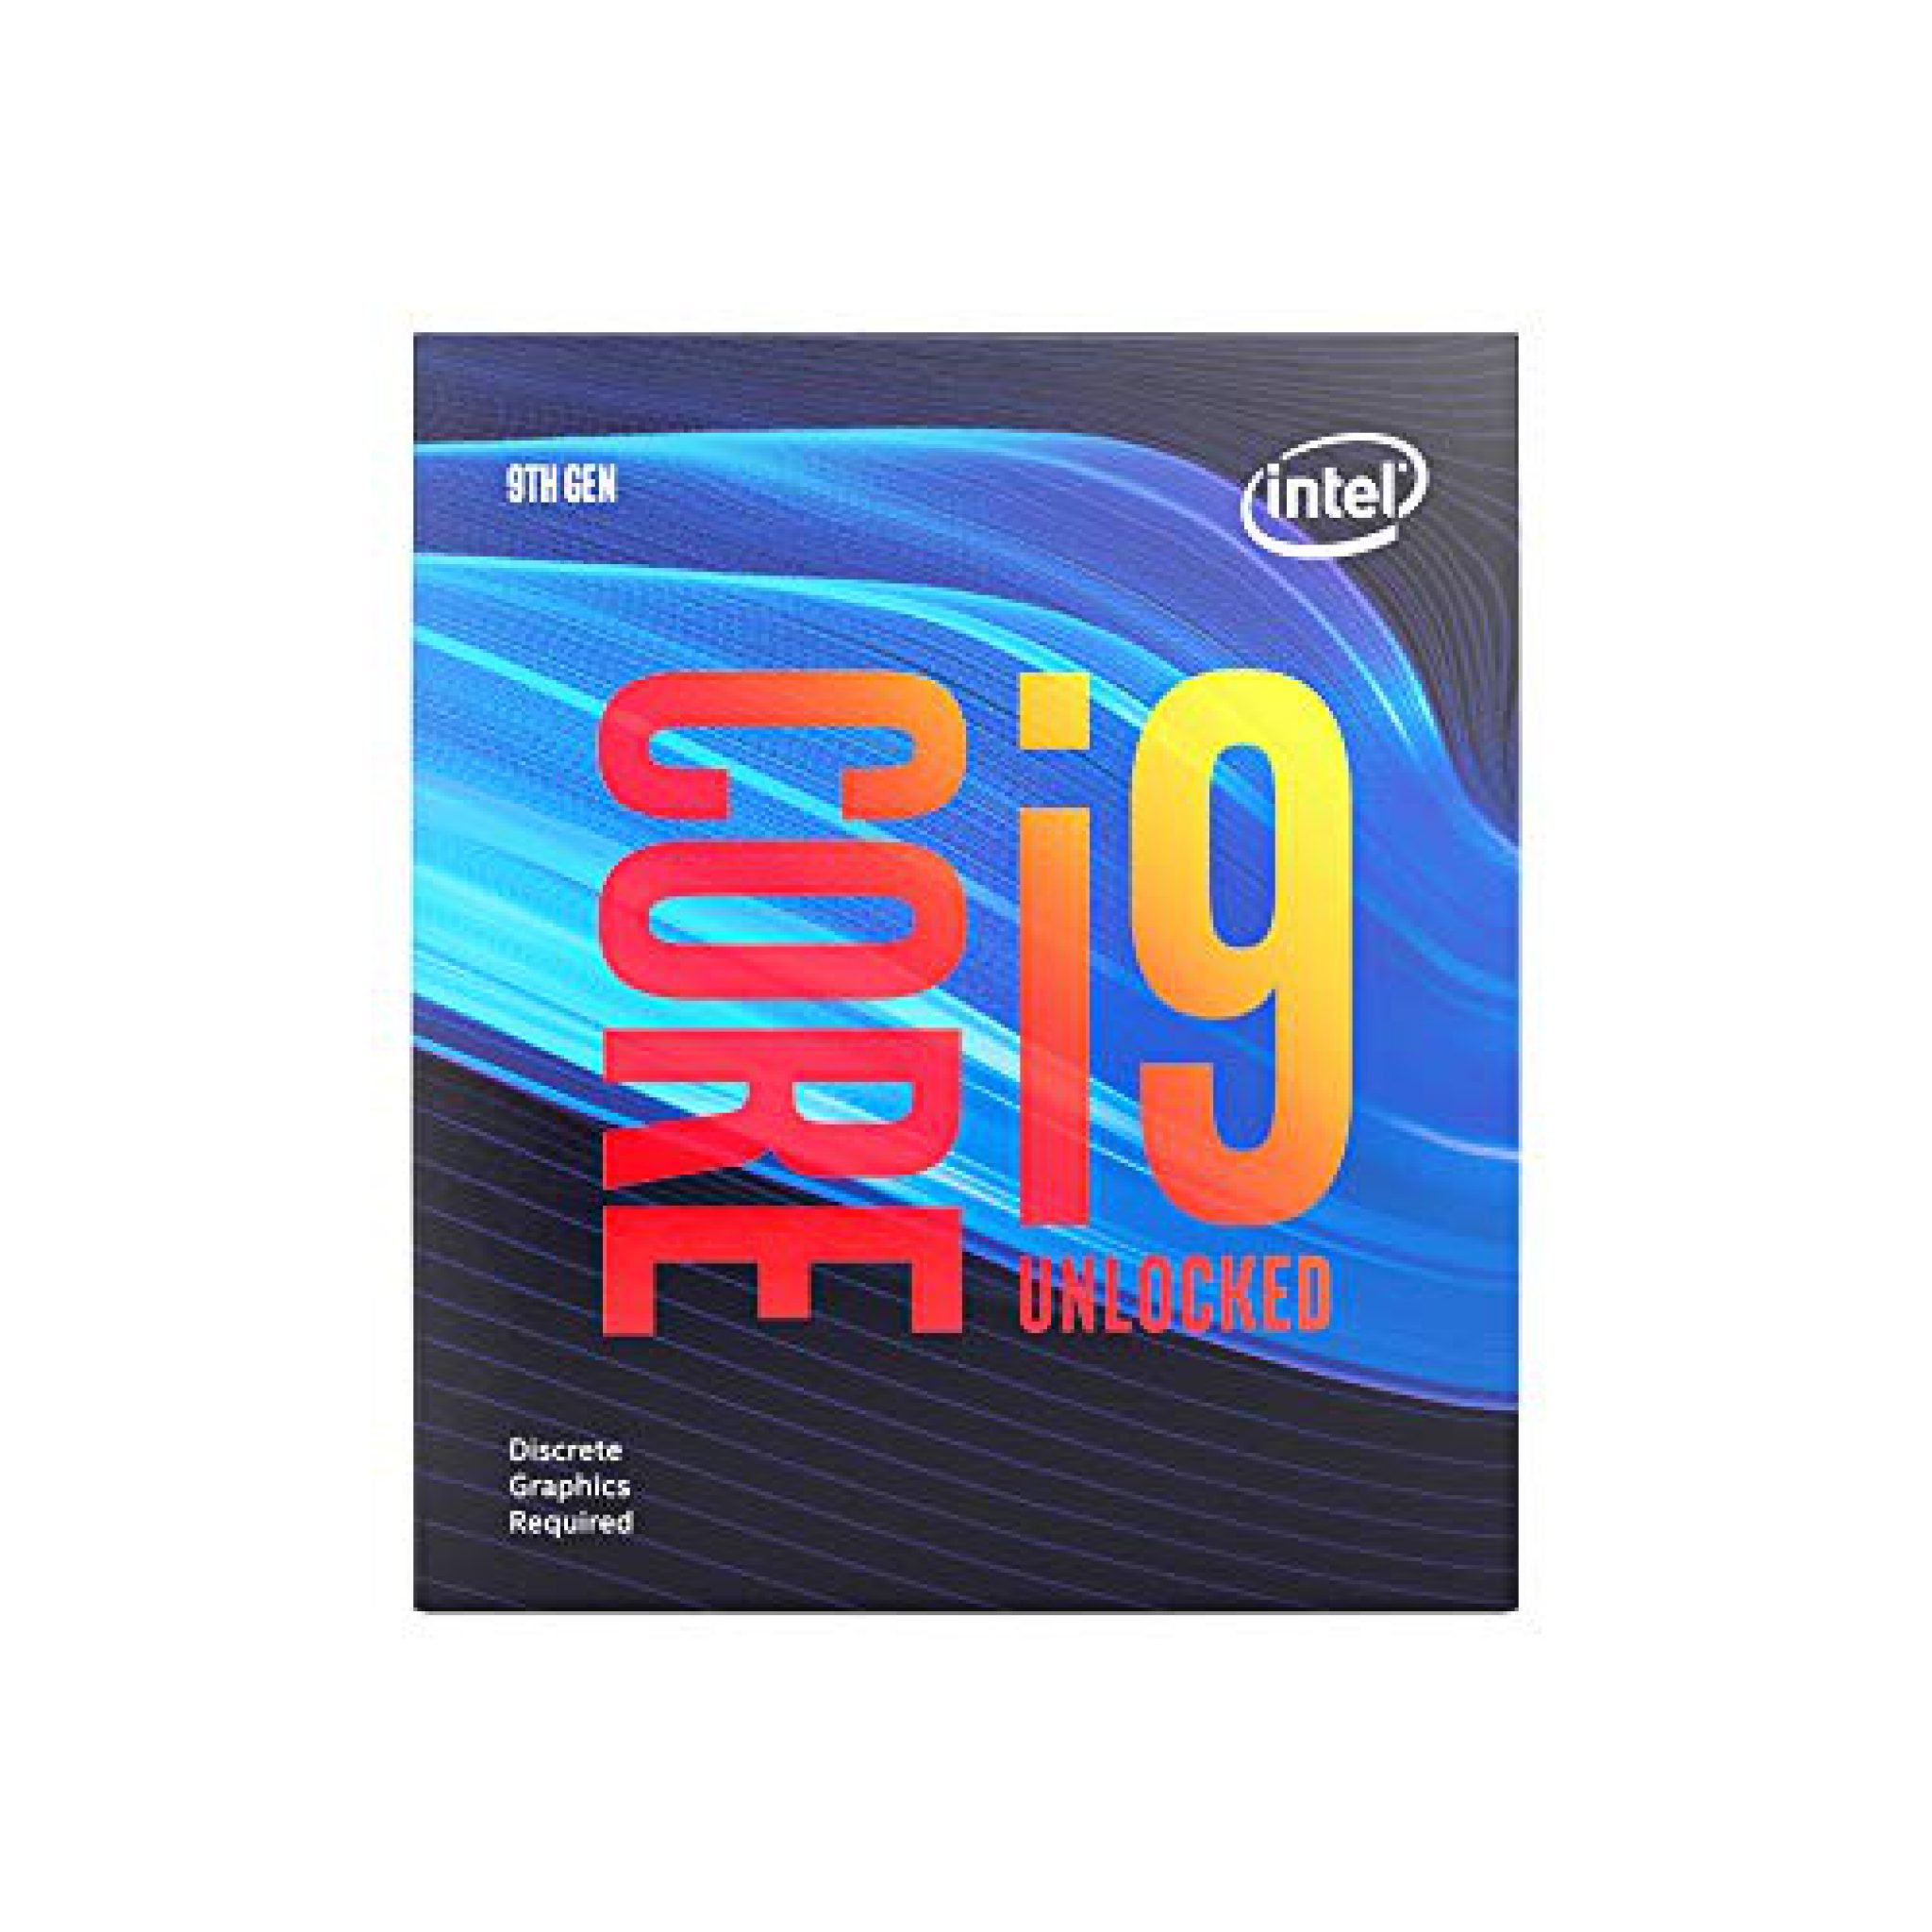 9th Gen Intel Core I9 9900KF Desktop Processor Review